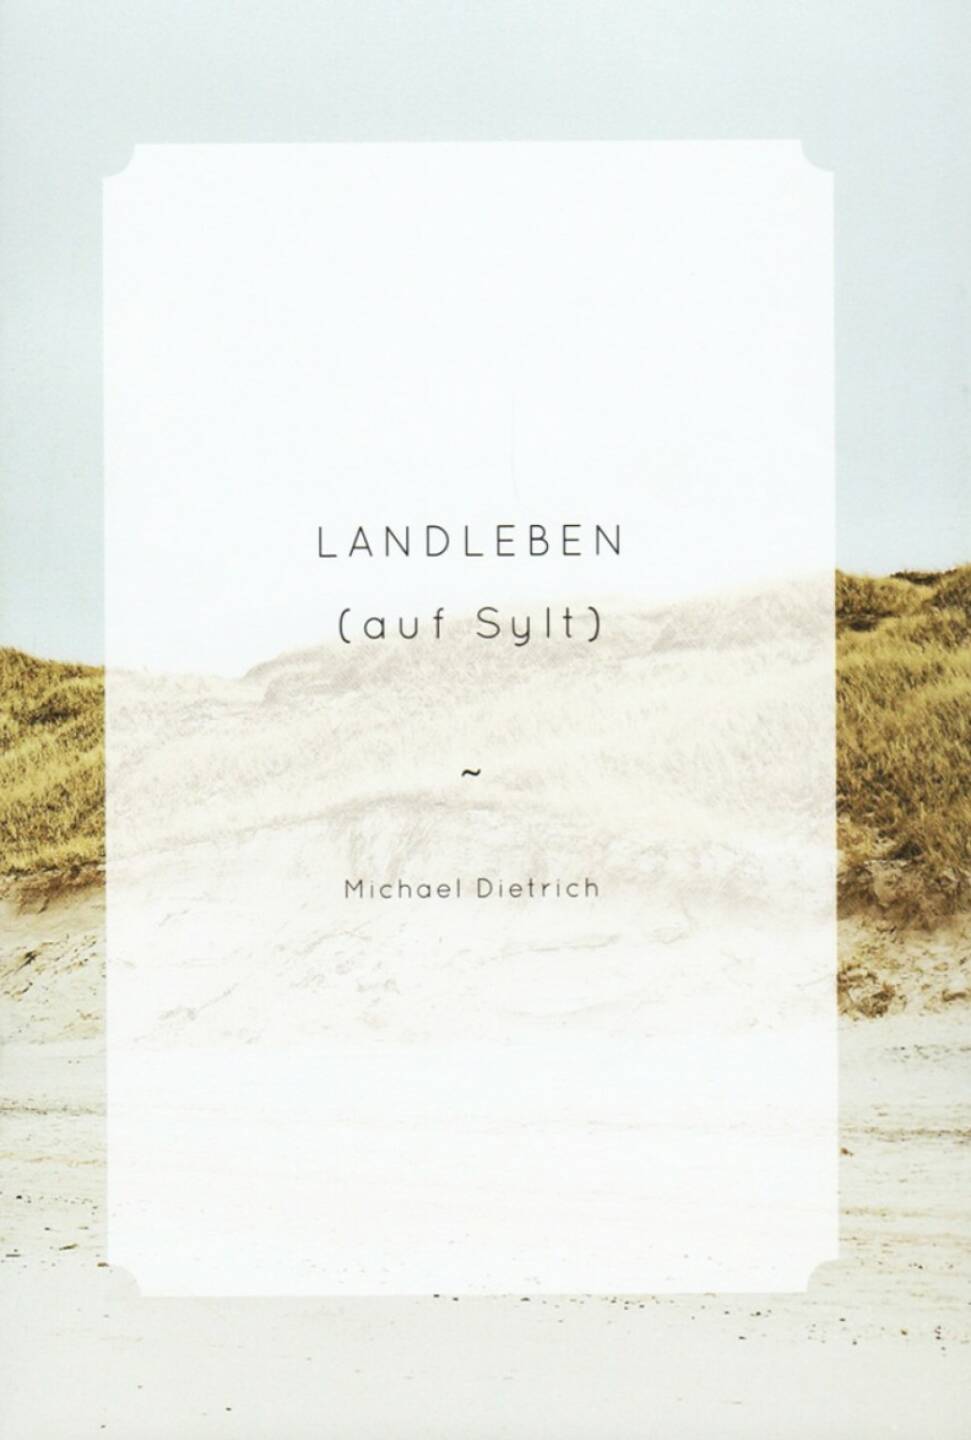 Michael Dietrich - Landleben (auf Sylt), The Velvet Cell, 2014, Cover, http://josefchladek.com/book/michael_dietrich_-_landleben_auf_sylt